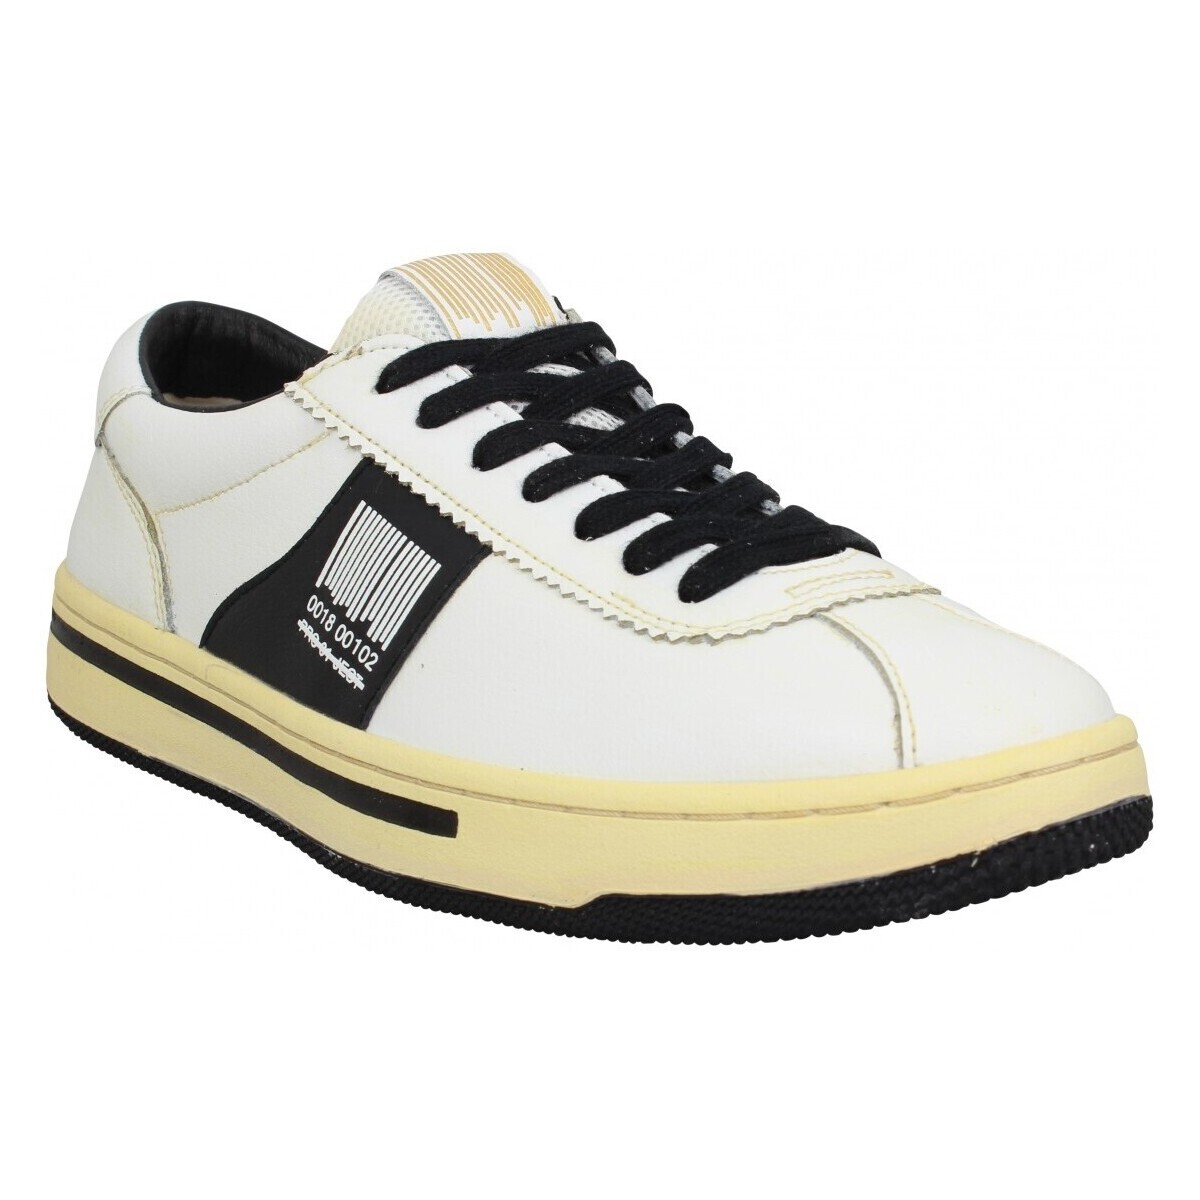 Παπούτσια Άνδρας Sneakers Pro 01 Ject P5lm Cuir Homme Blanc Noir Άσπρο